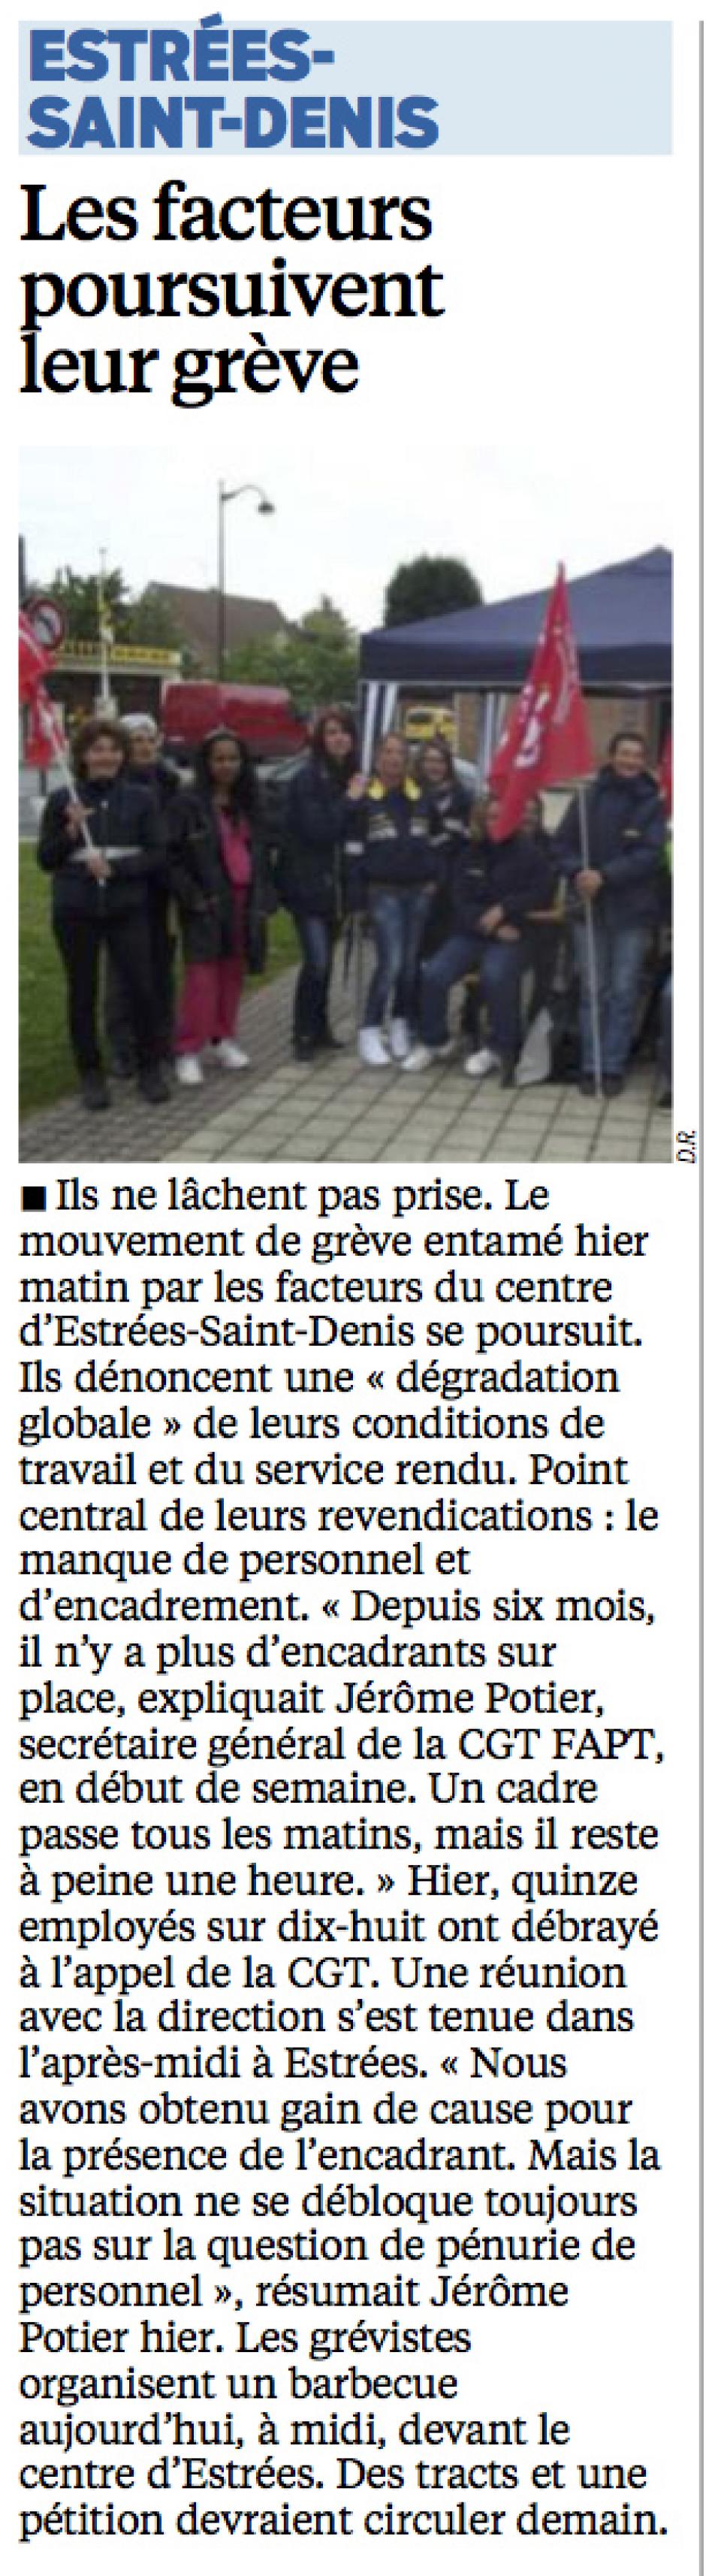 20140522-LeP-Estrées-Saint-Denis-Les facteurs poursuivent leur grève